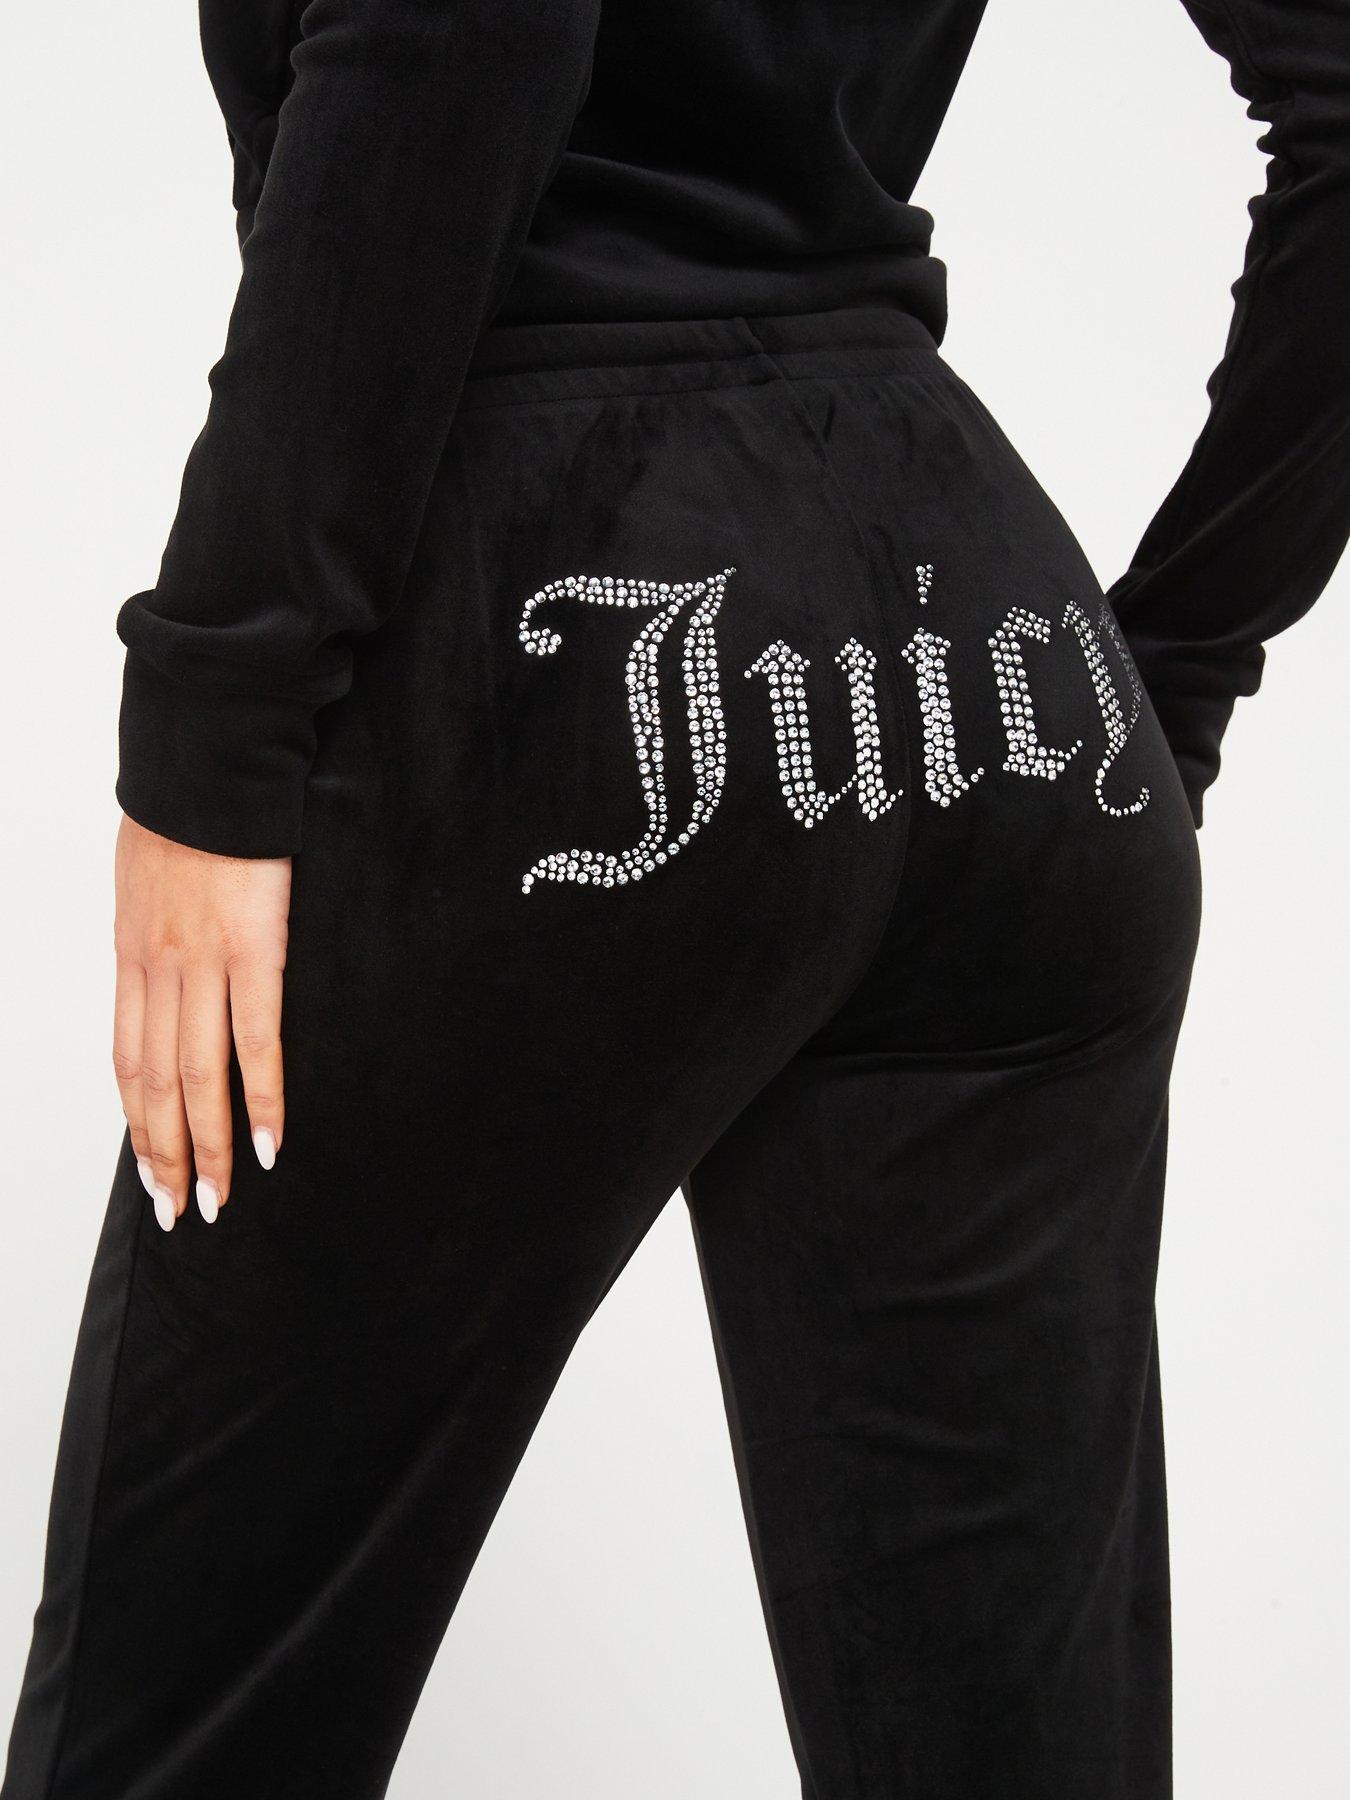 Women's Joggers Pants Juice Couture Black Label Size L